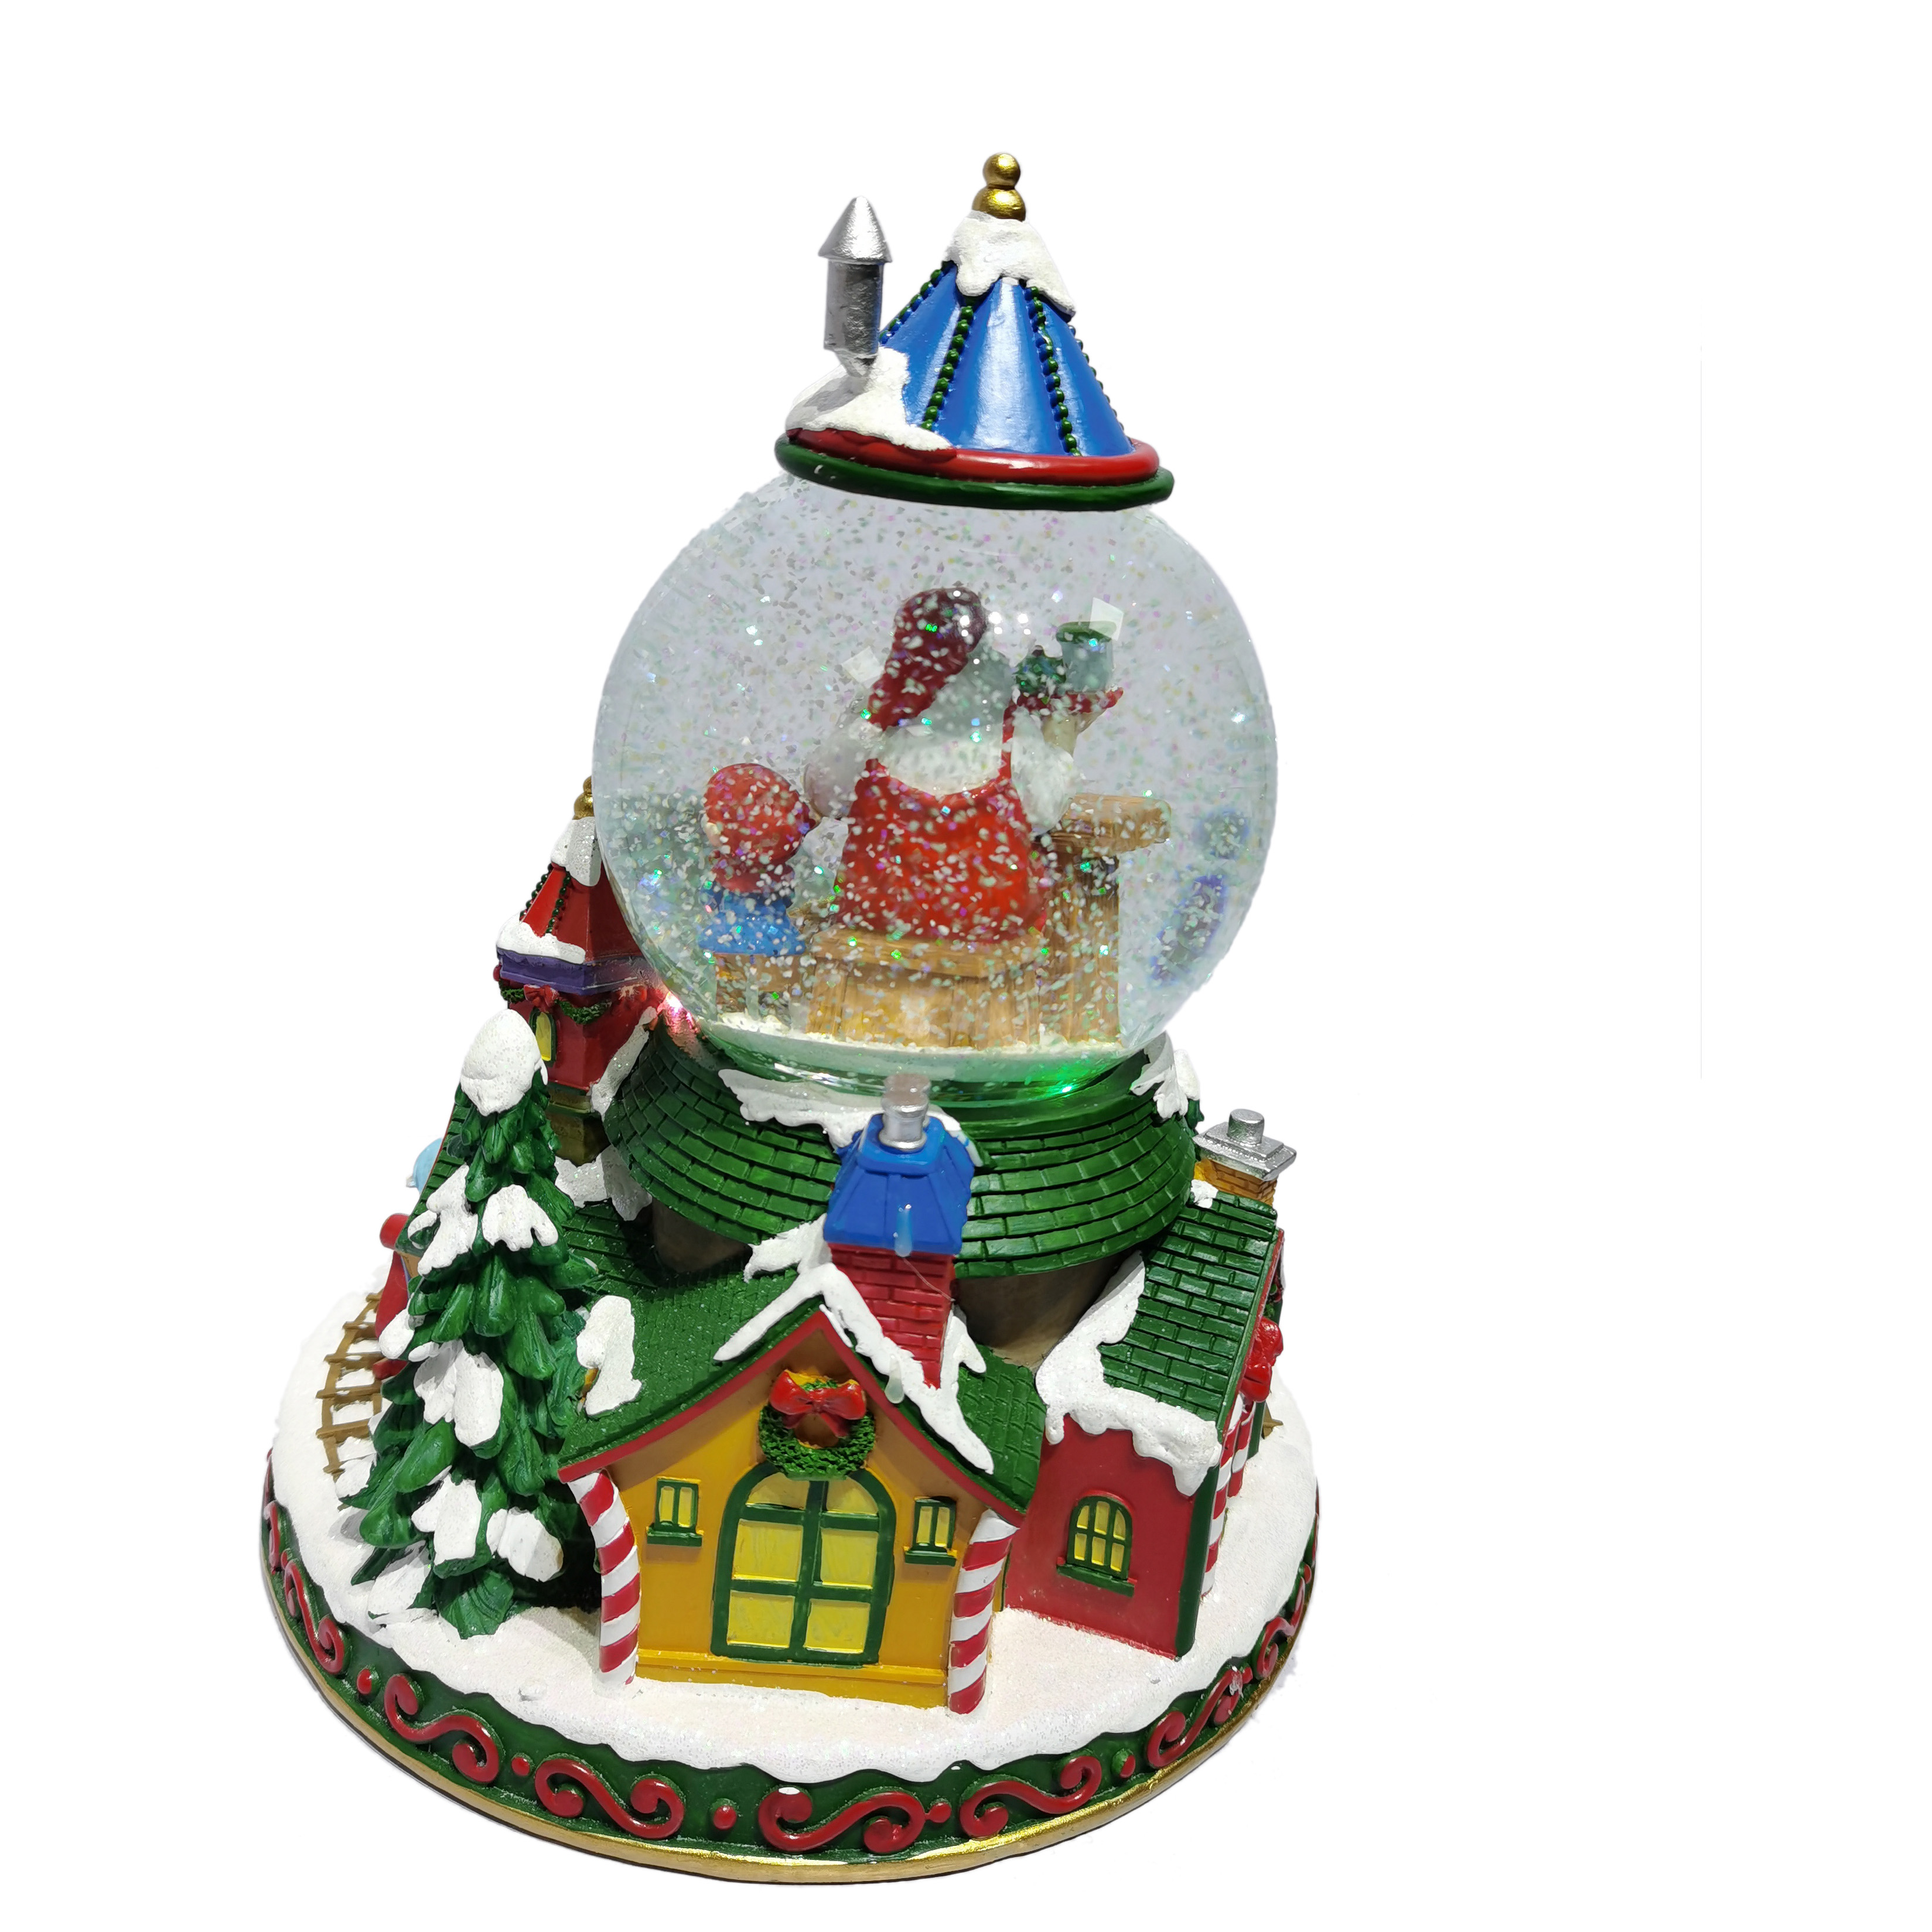 Benutzerdefinierte drehbare, bunt beleuchtete Dorf-Weihnachtsschneekugel aus Harz mit Musik für die Festdekoration